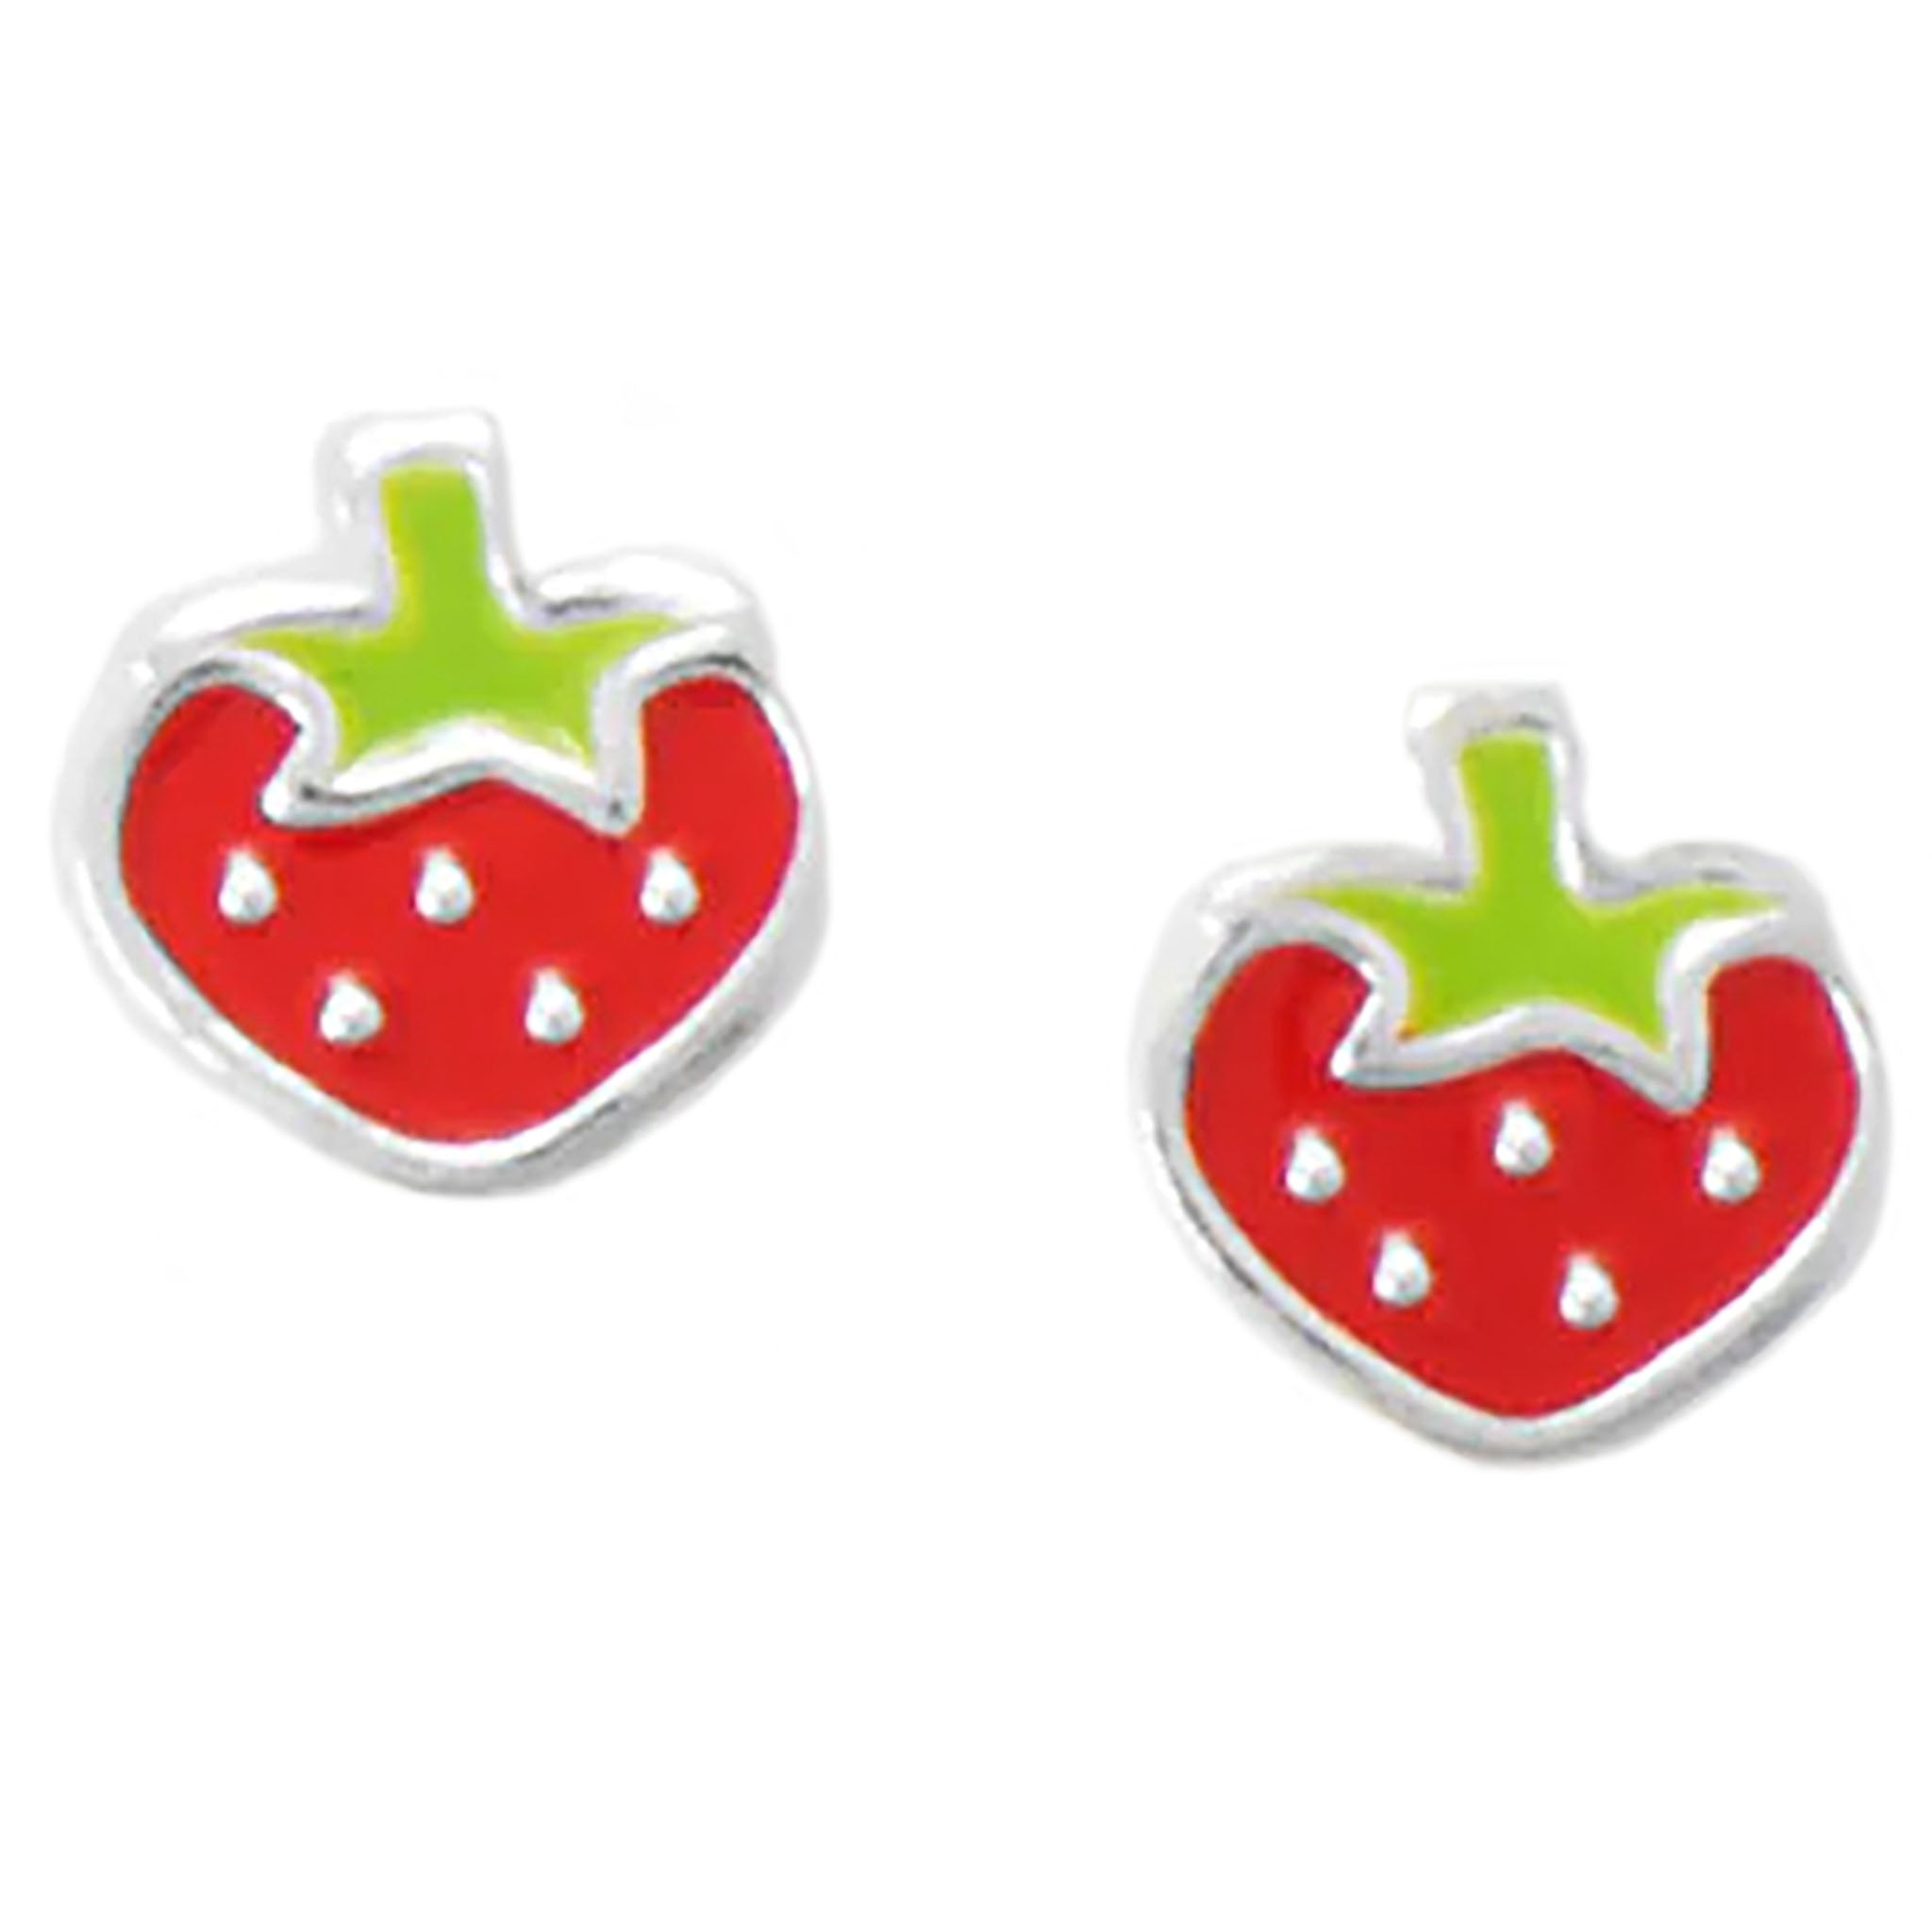 Enamel Strawberry Stud Earrings